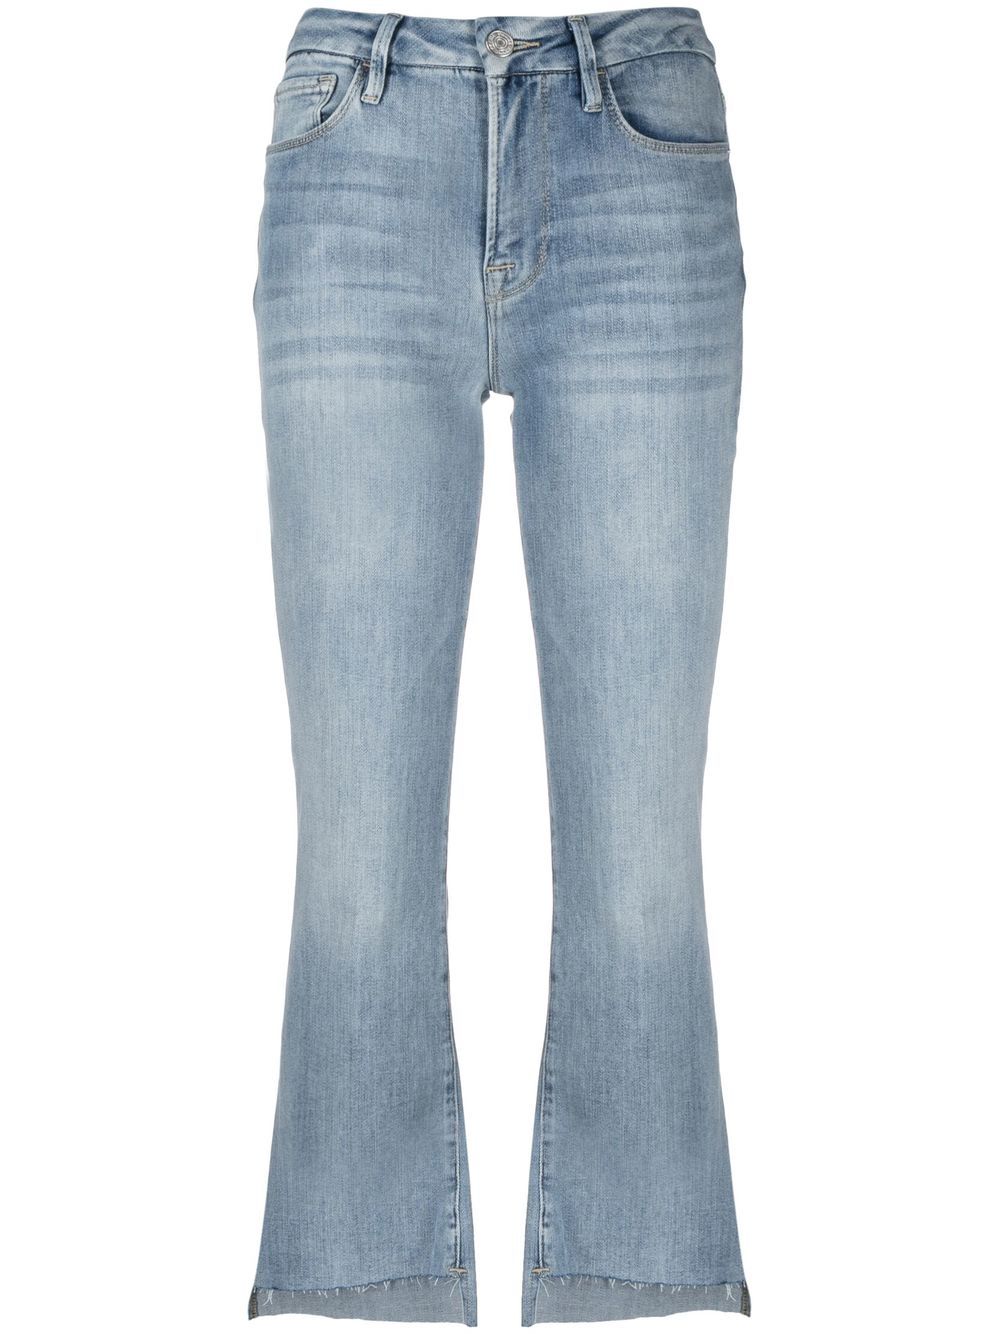 cropped-leg jeans